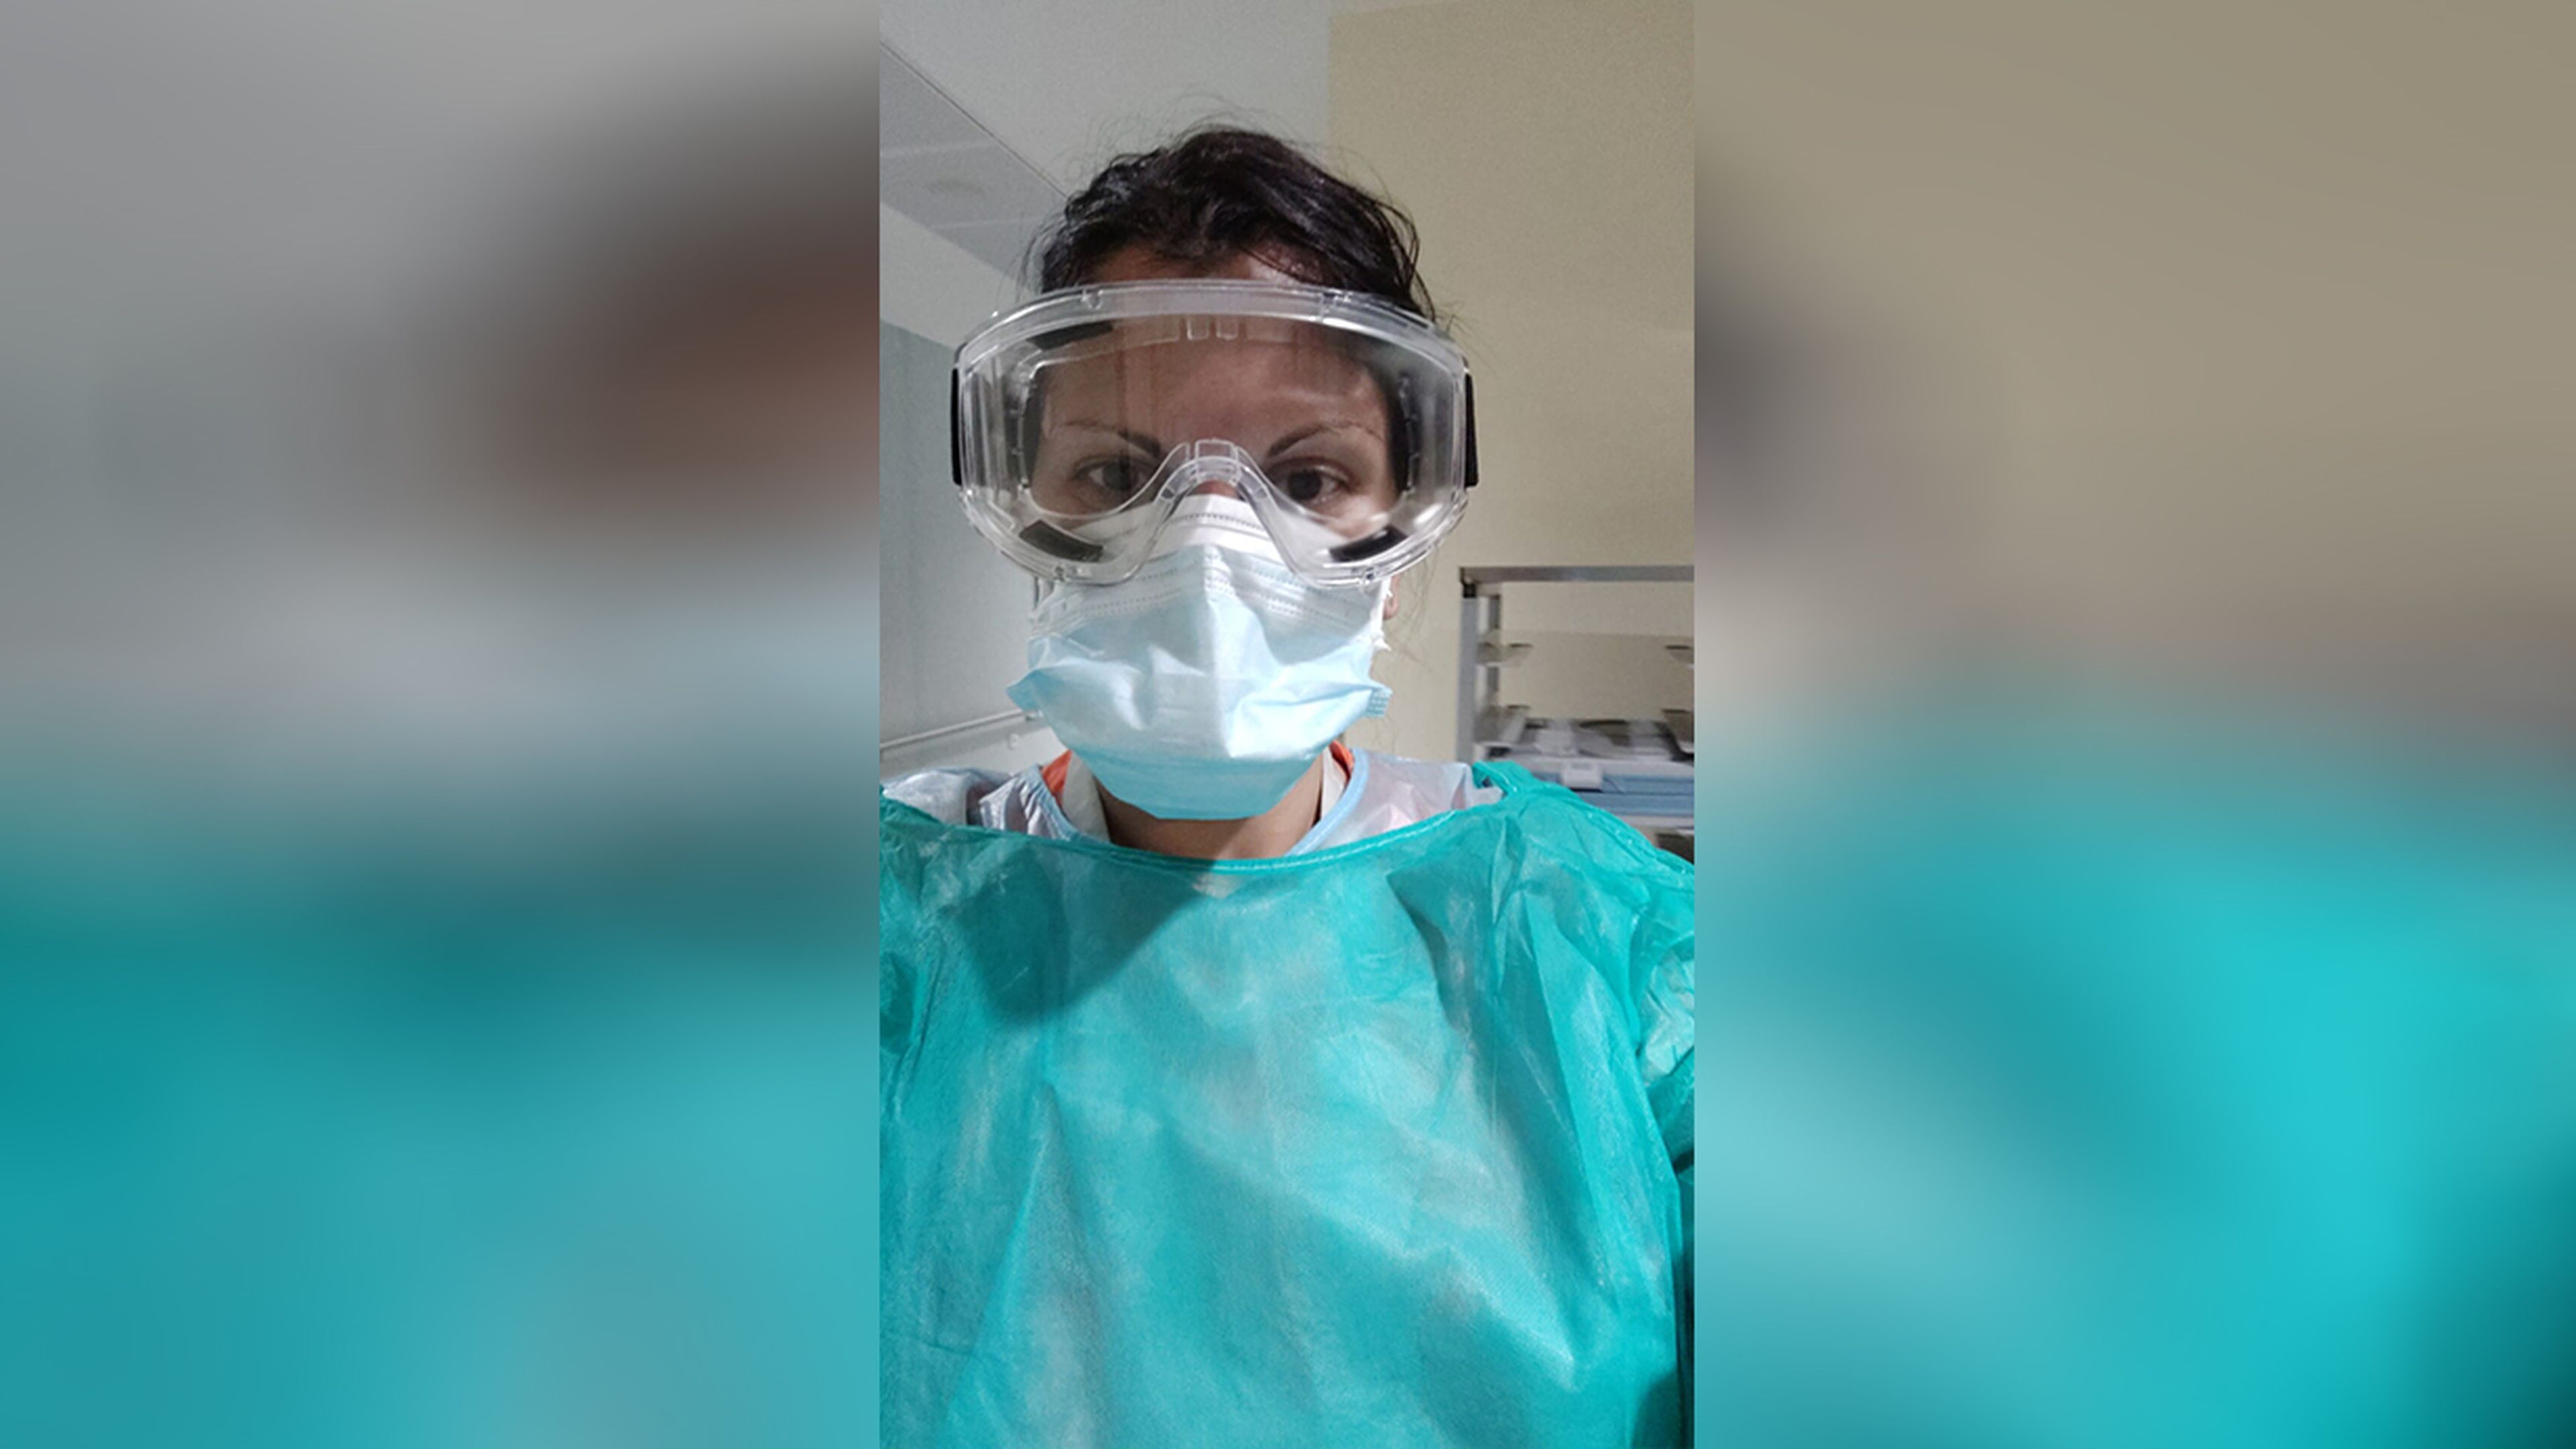 Coral Merino, enfermera en urgencias del Hospital Príncipe de Asturias de Alcalá de Henares